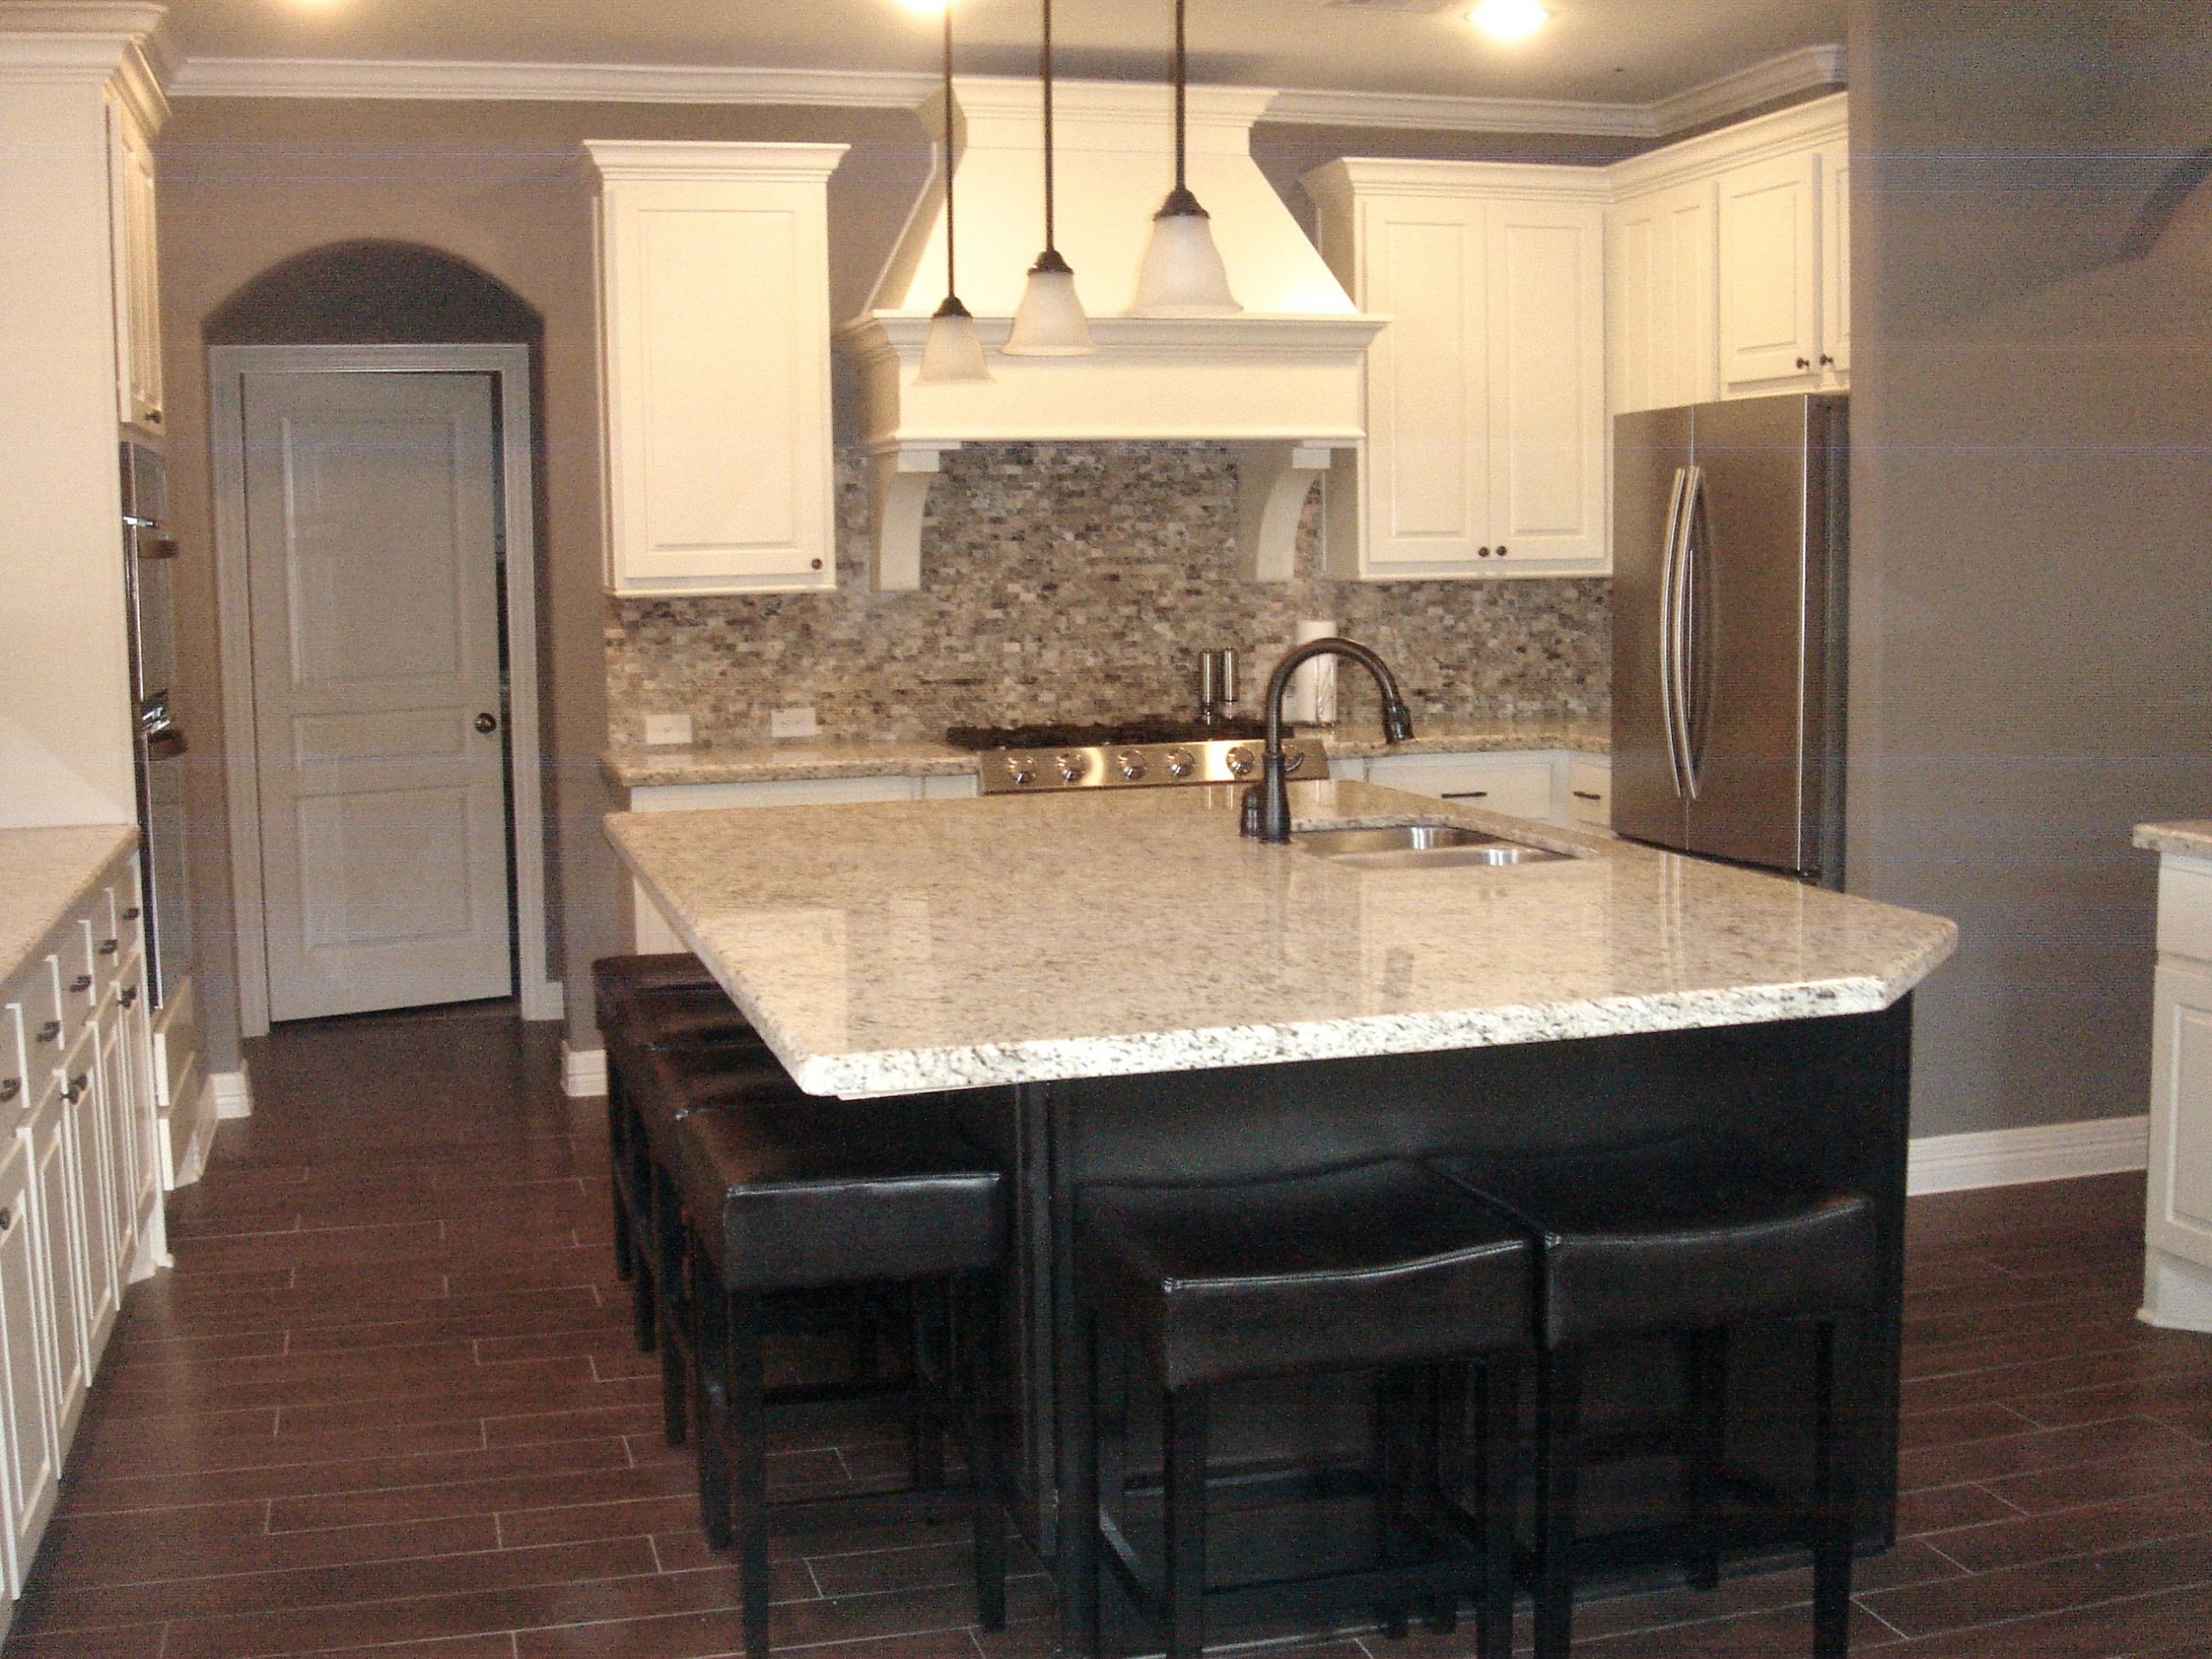 White Brick Tile Backsplash Kitchen Awesome White Kitchen with Light Tile Floor Kitchen with Gray